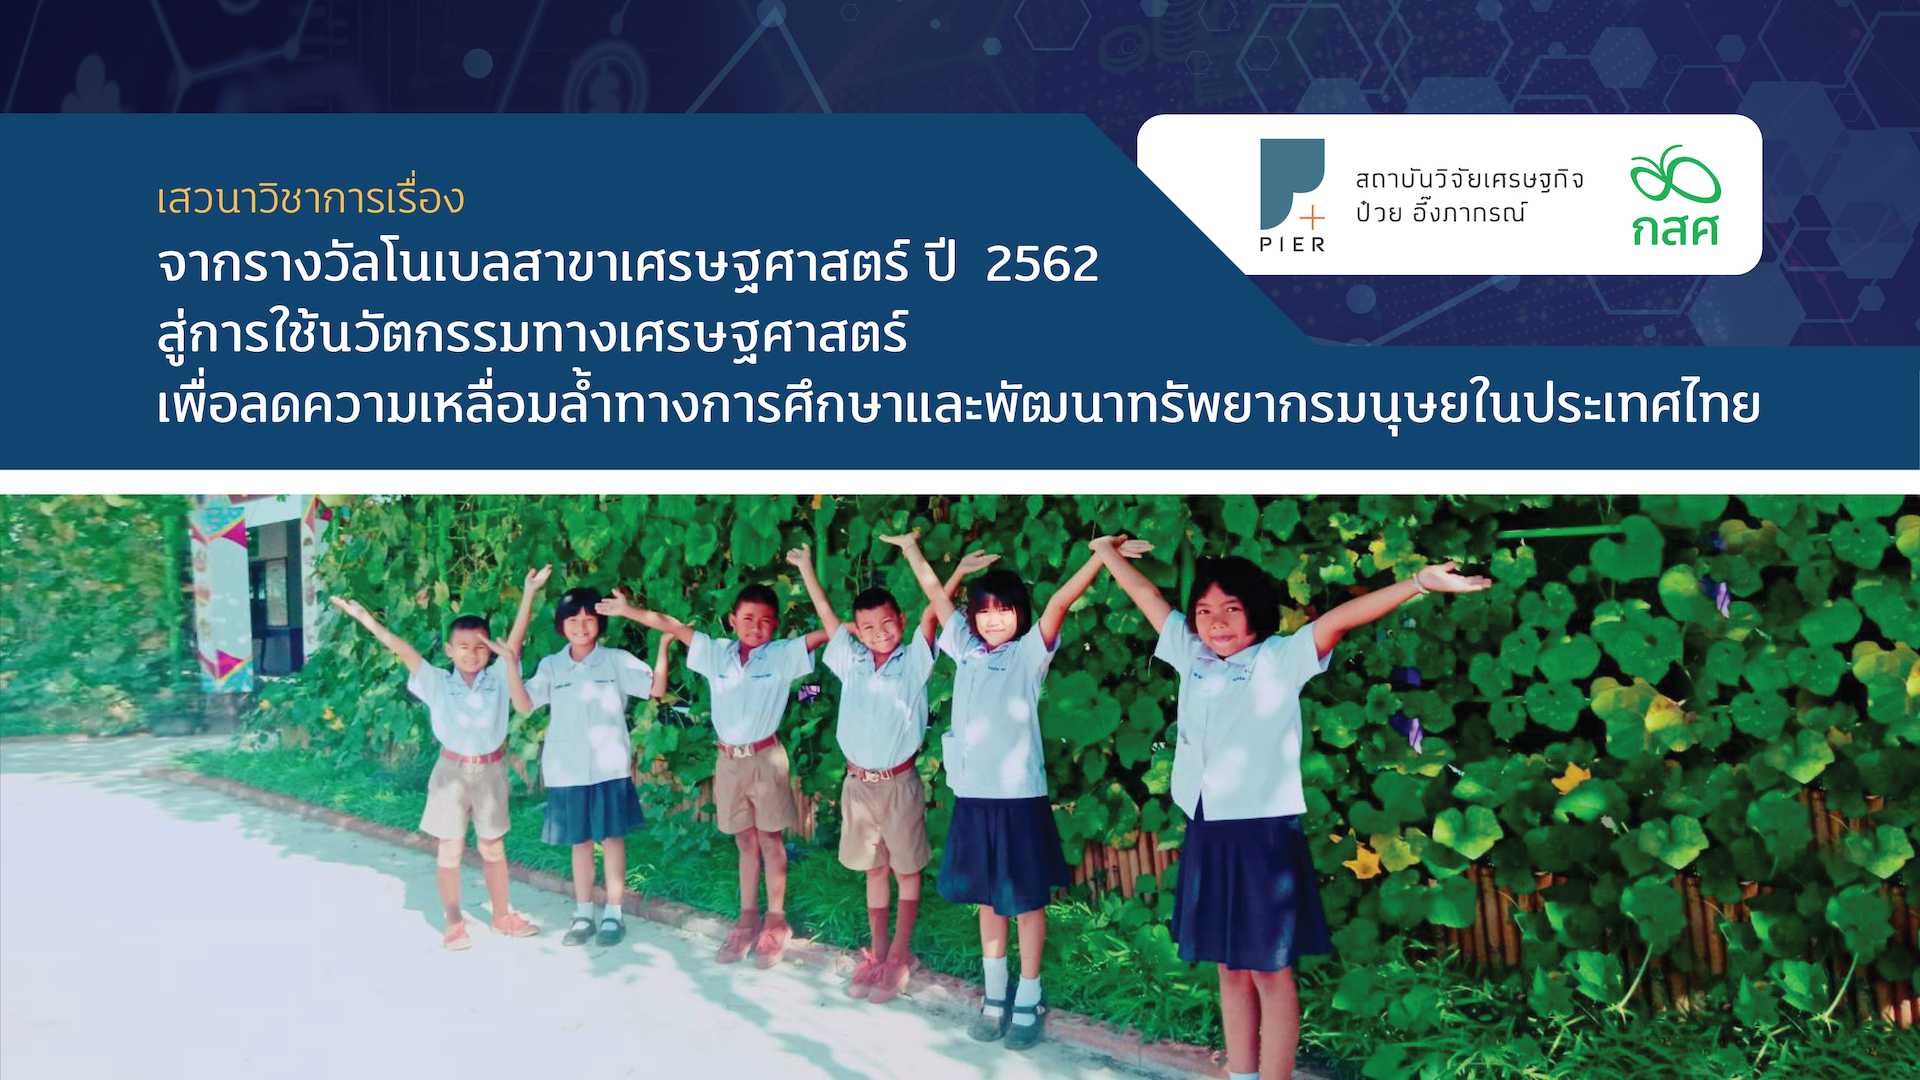 จากรางวัลโนเบลสาขาเศรษฐศาสตร์ ปี 2562 สู่การใช้นวัตกรรมทางเศรษฐศาสตร์เพื่อลดความเหลื่อมล้ำทางการศึกษาและพัฒนาทรัพยากรมนุษย์ในประเทศไทย